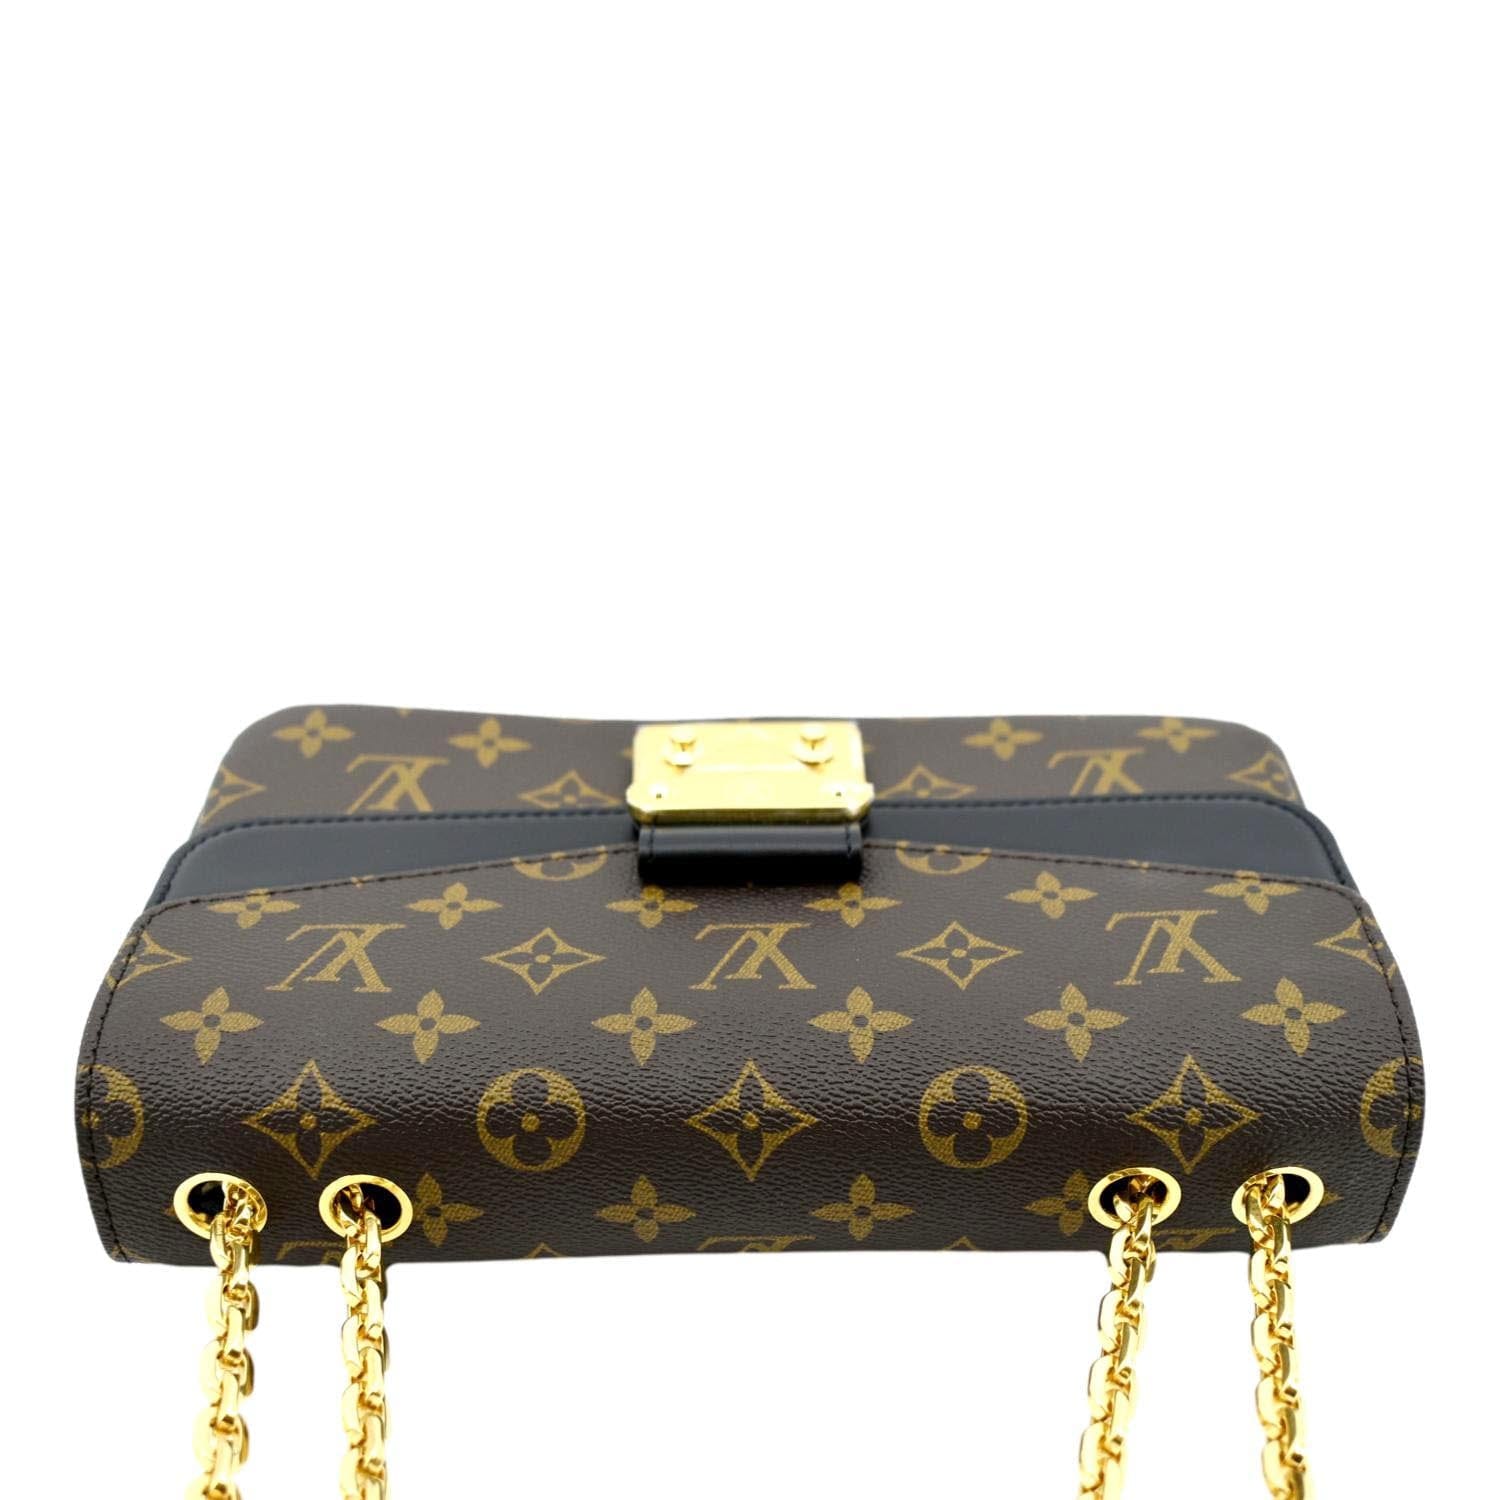 Louis Vuitton LV Marceau Black - Nice Bag™